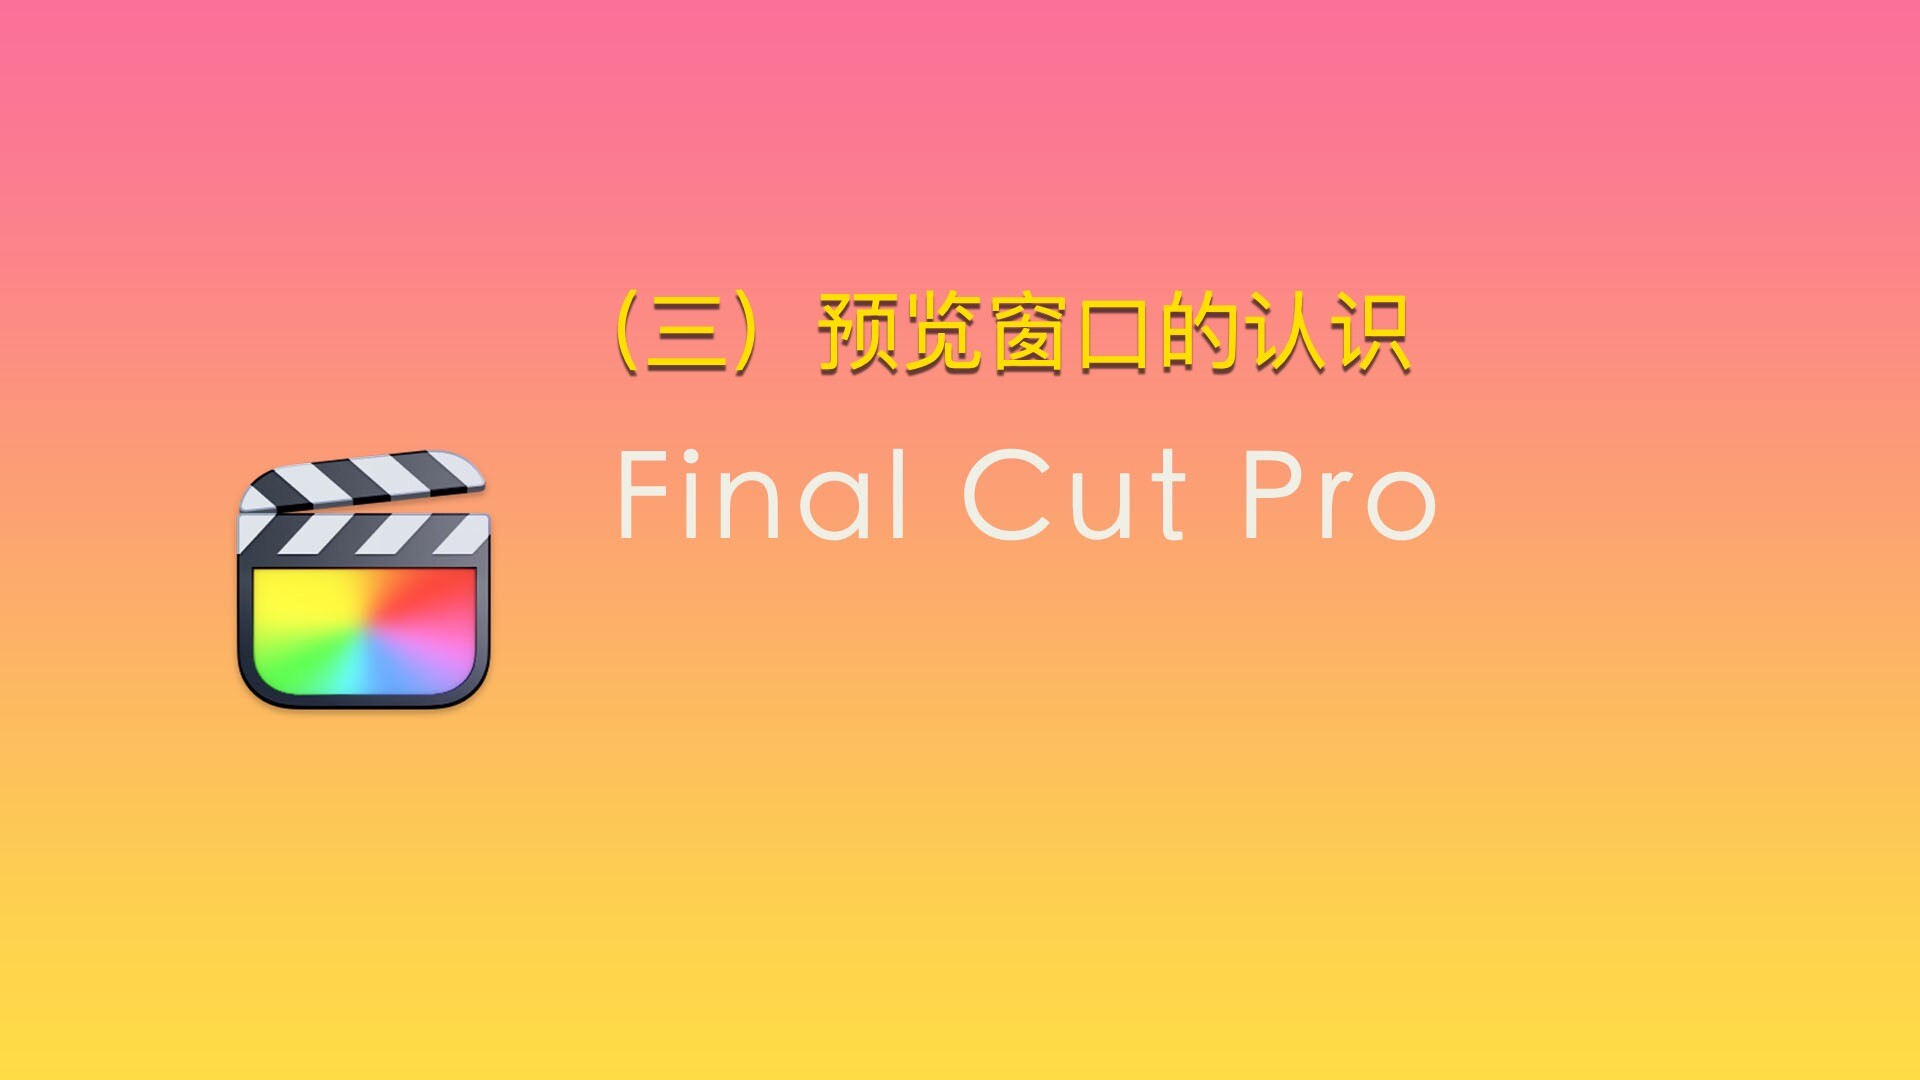 Final Cut Pro中文新手教程 (3) 预览窗口的认识